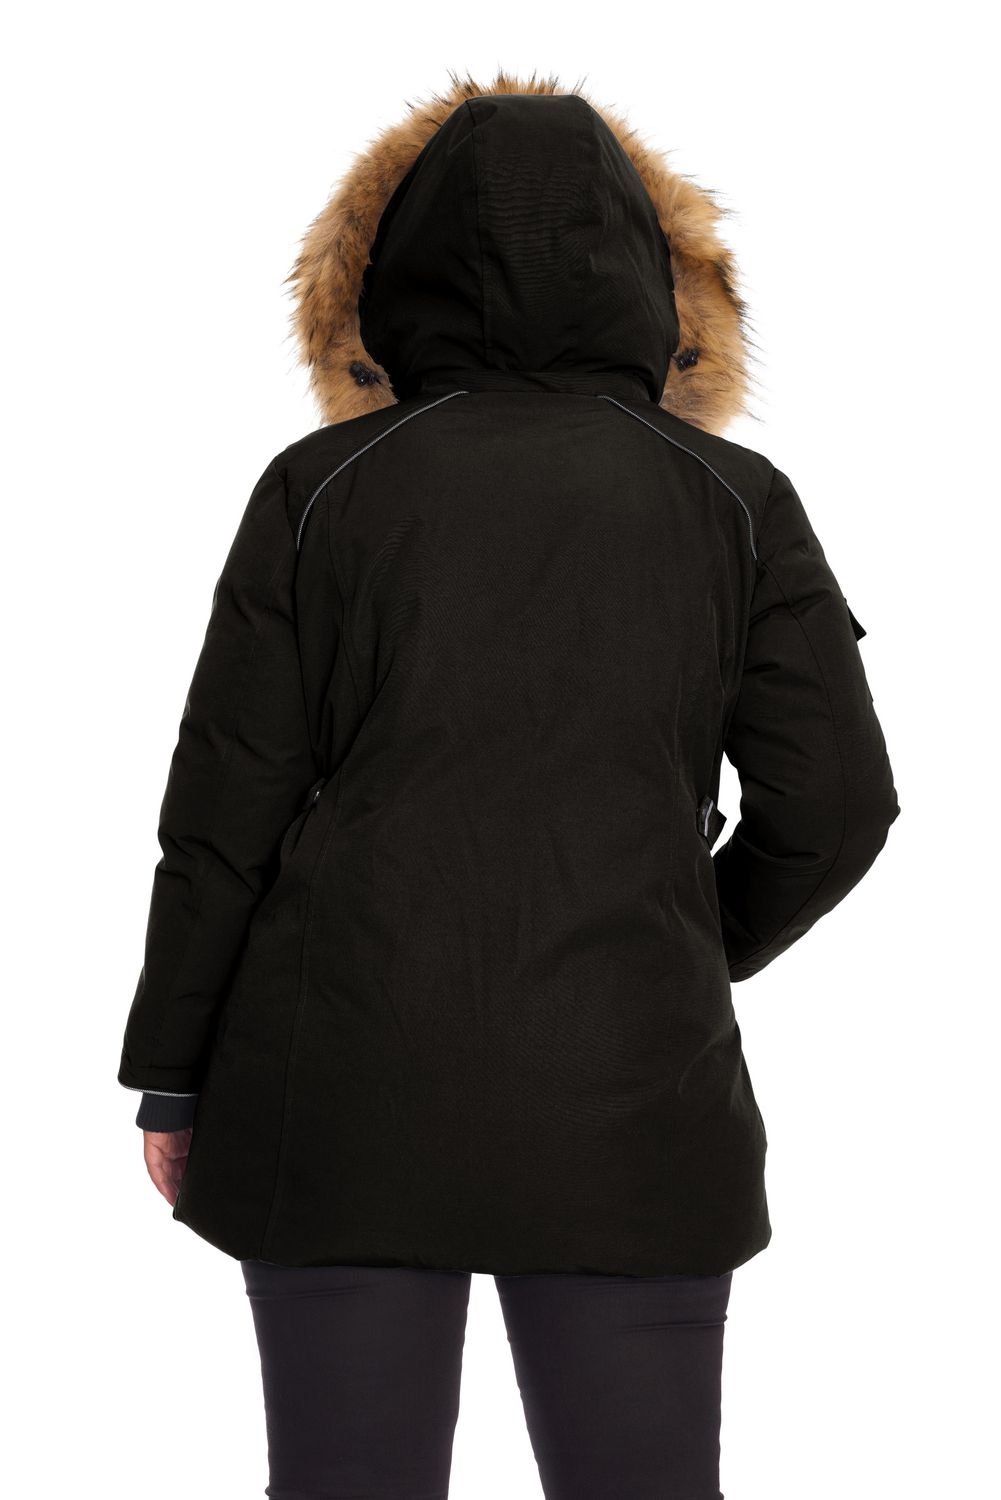 liquidation manteau hiver femme taille plus